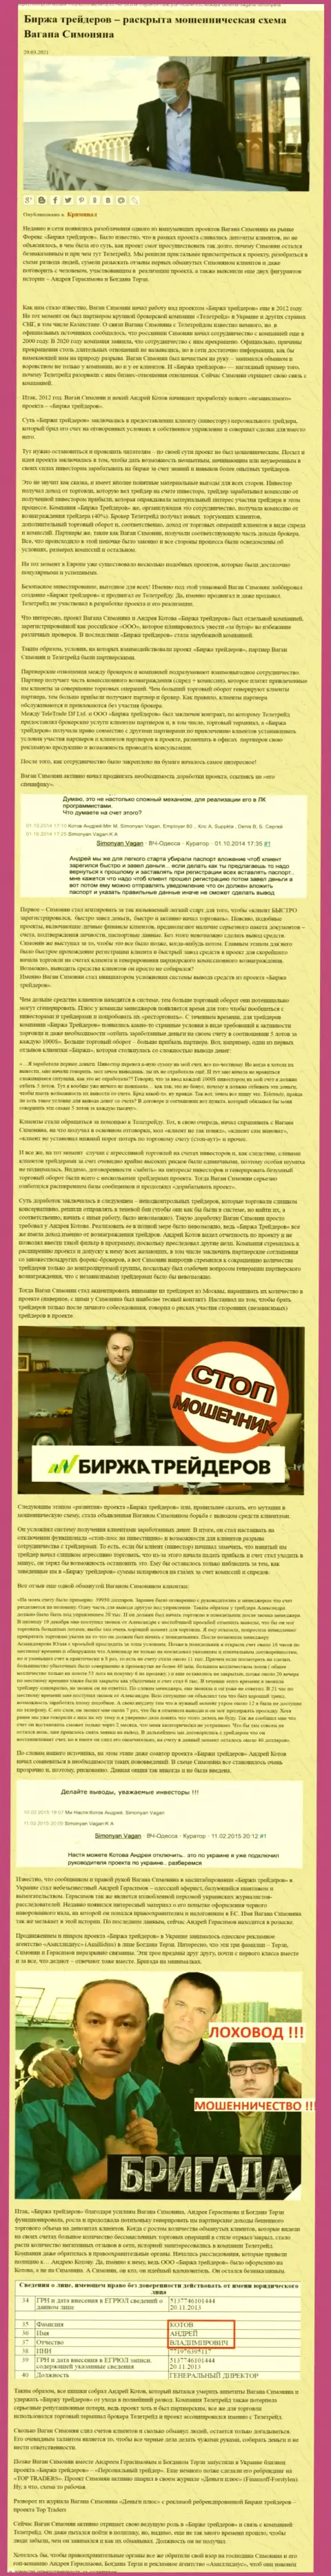 Пиаром компании B-Traders Ru, тесно связанной с мошенниками TeleTrade Org, также был занят Богдан Терзи